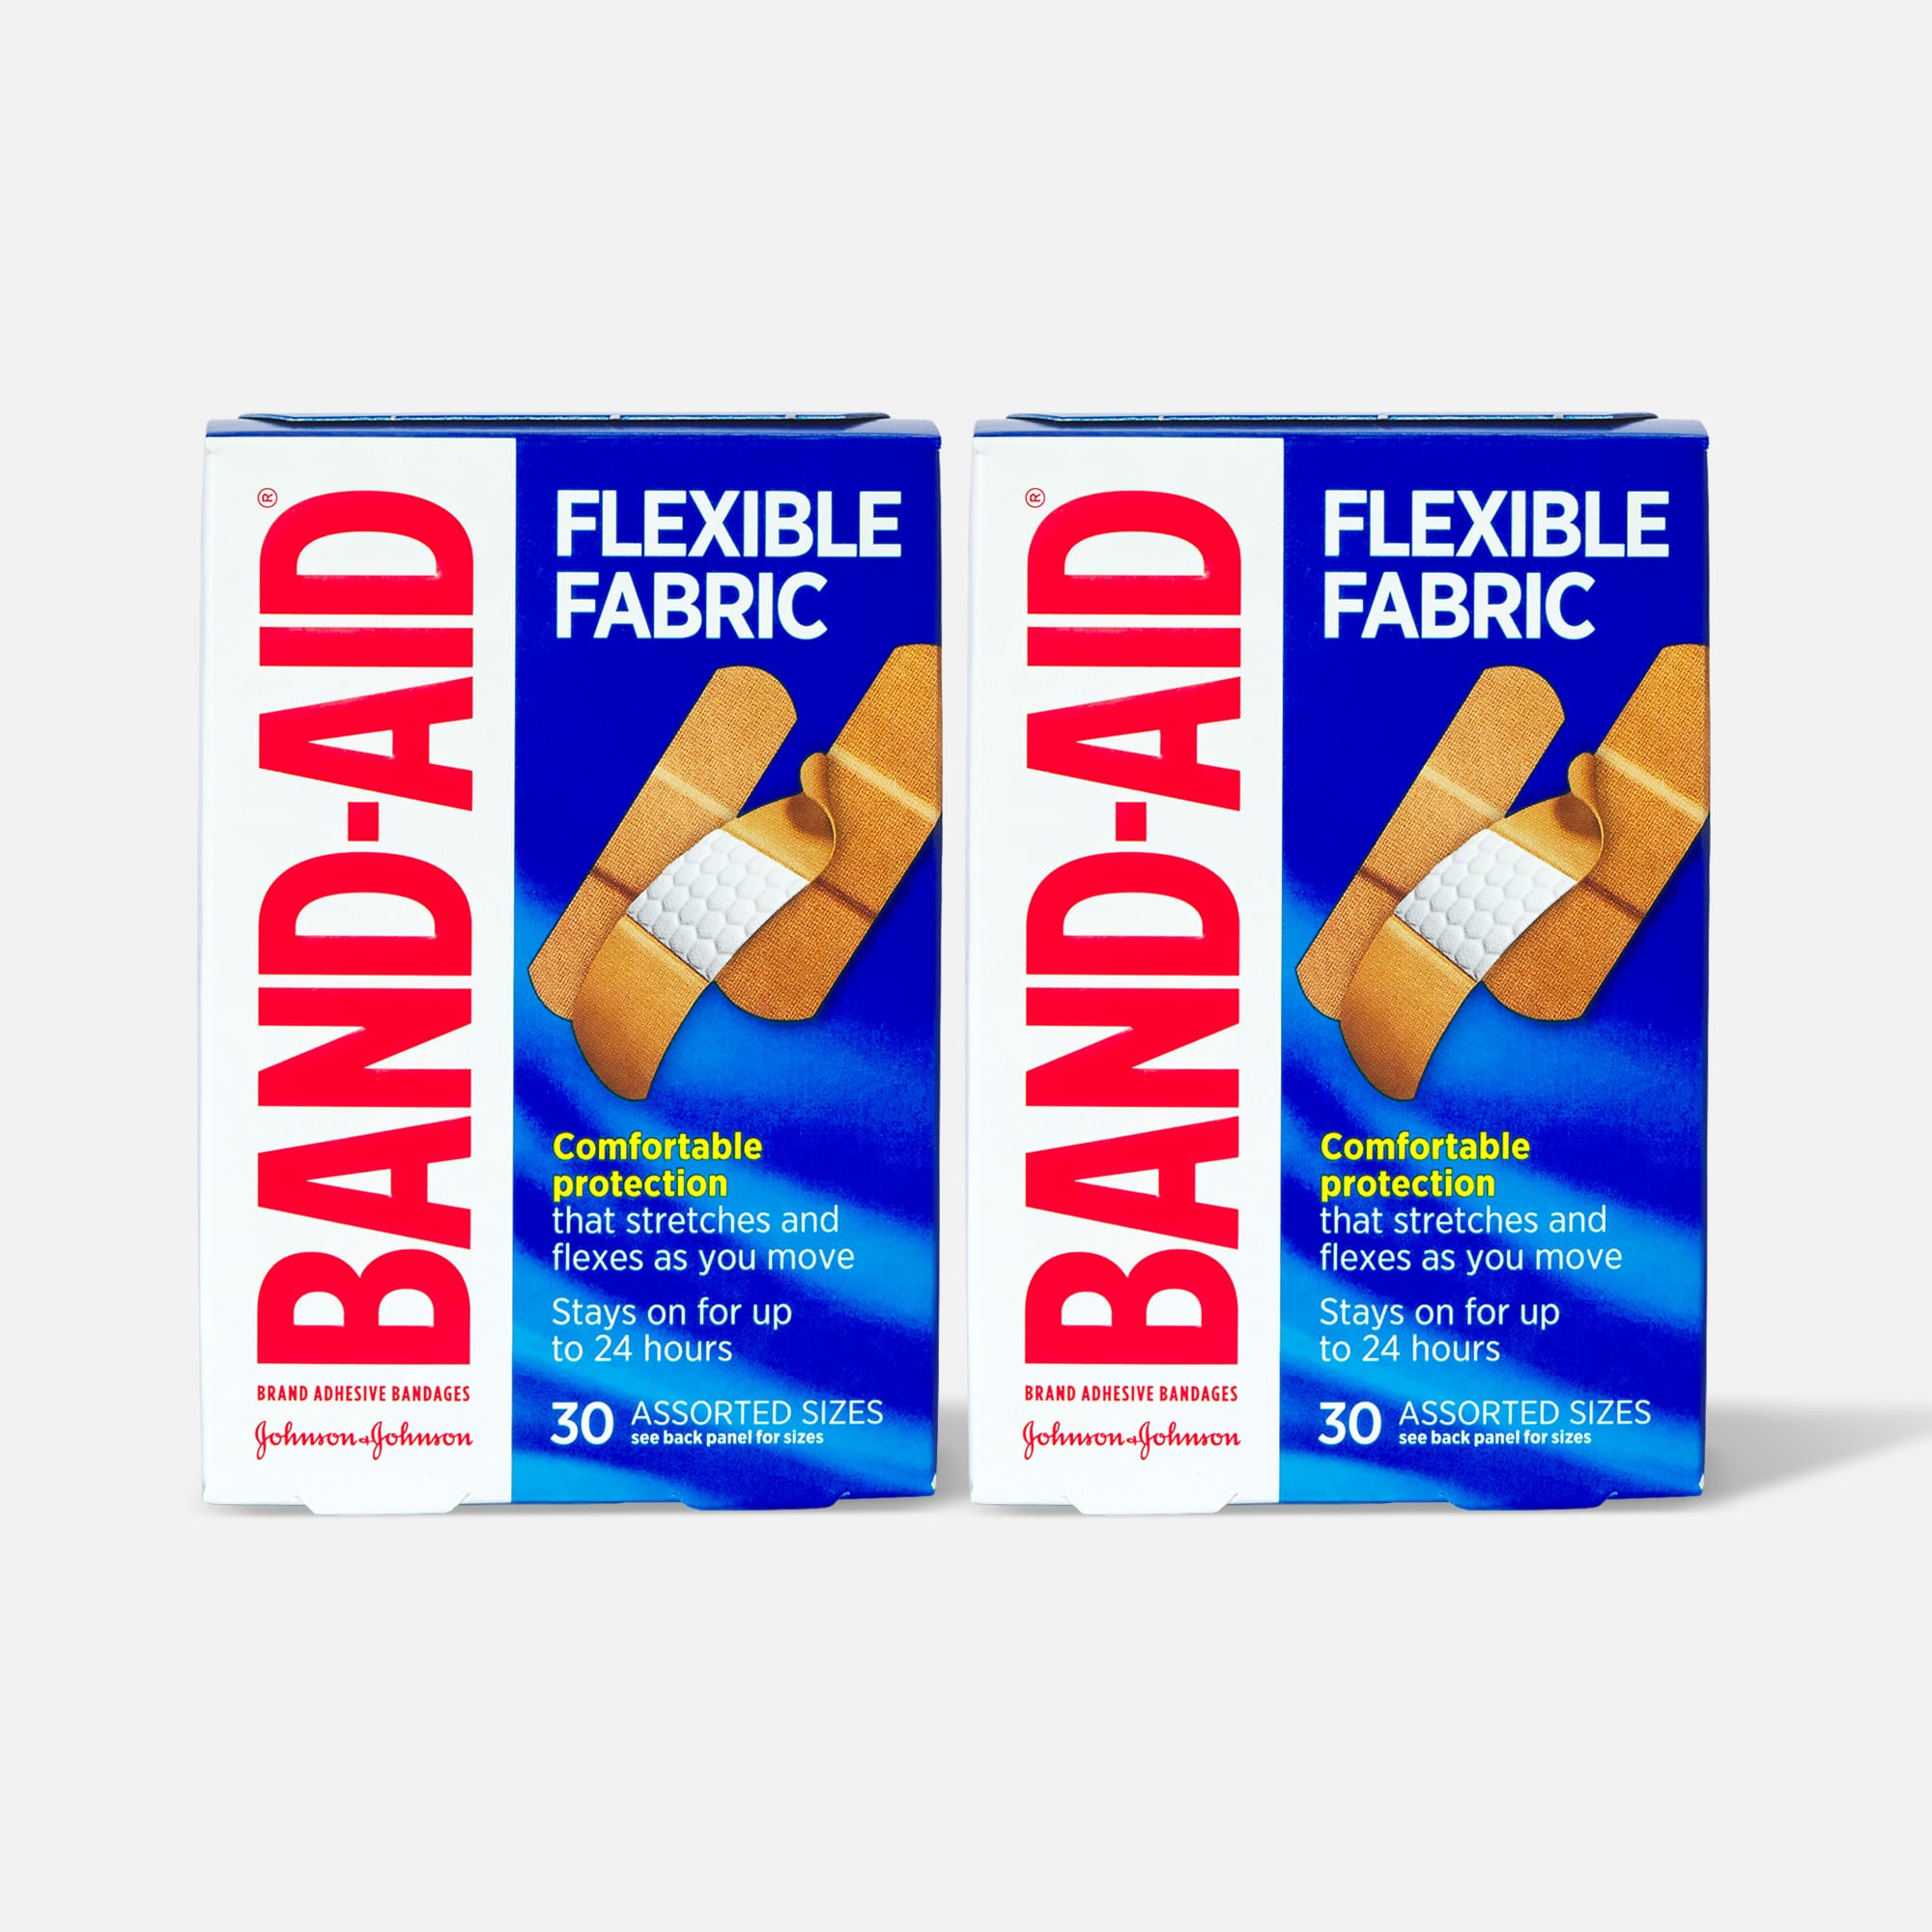 Johnson & Johnson Band Aid Flexible Fabric Adhesive Bandages